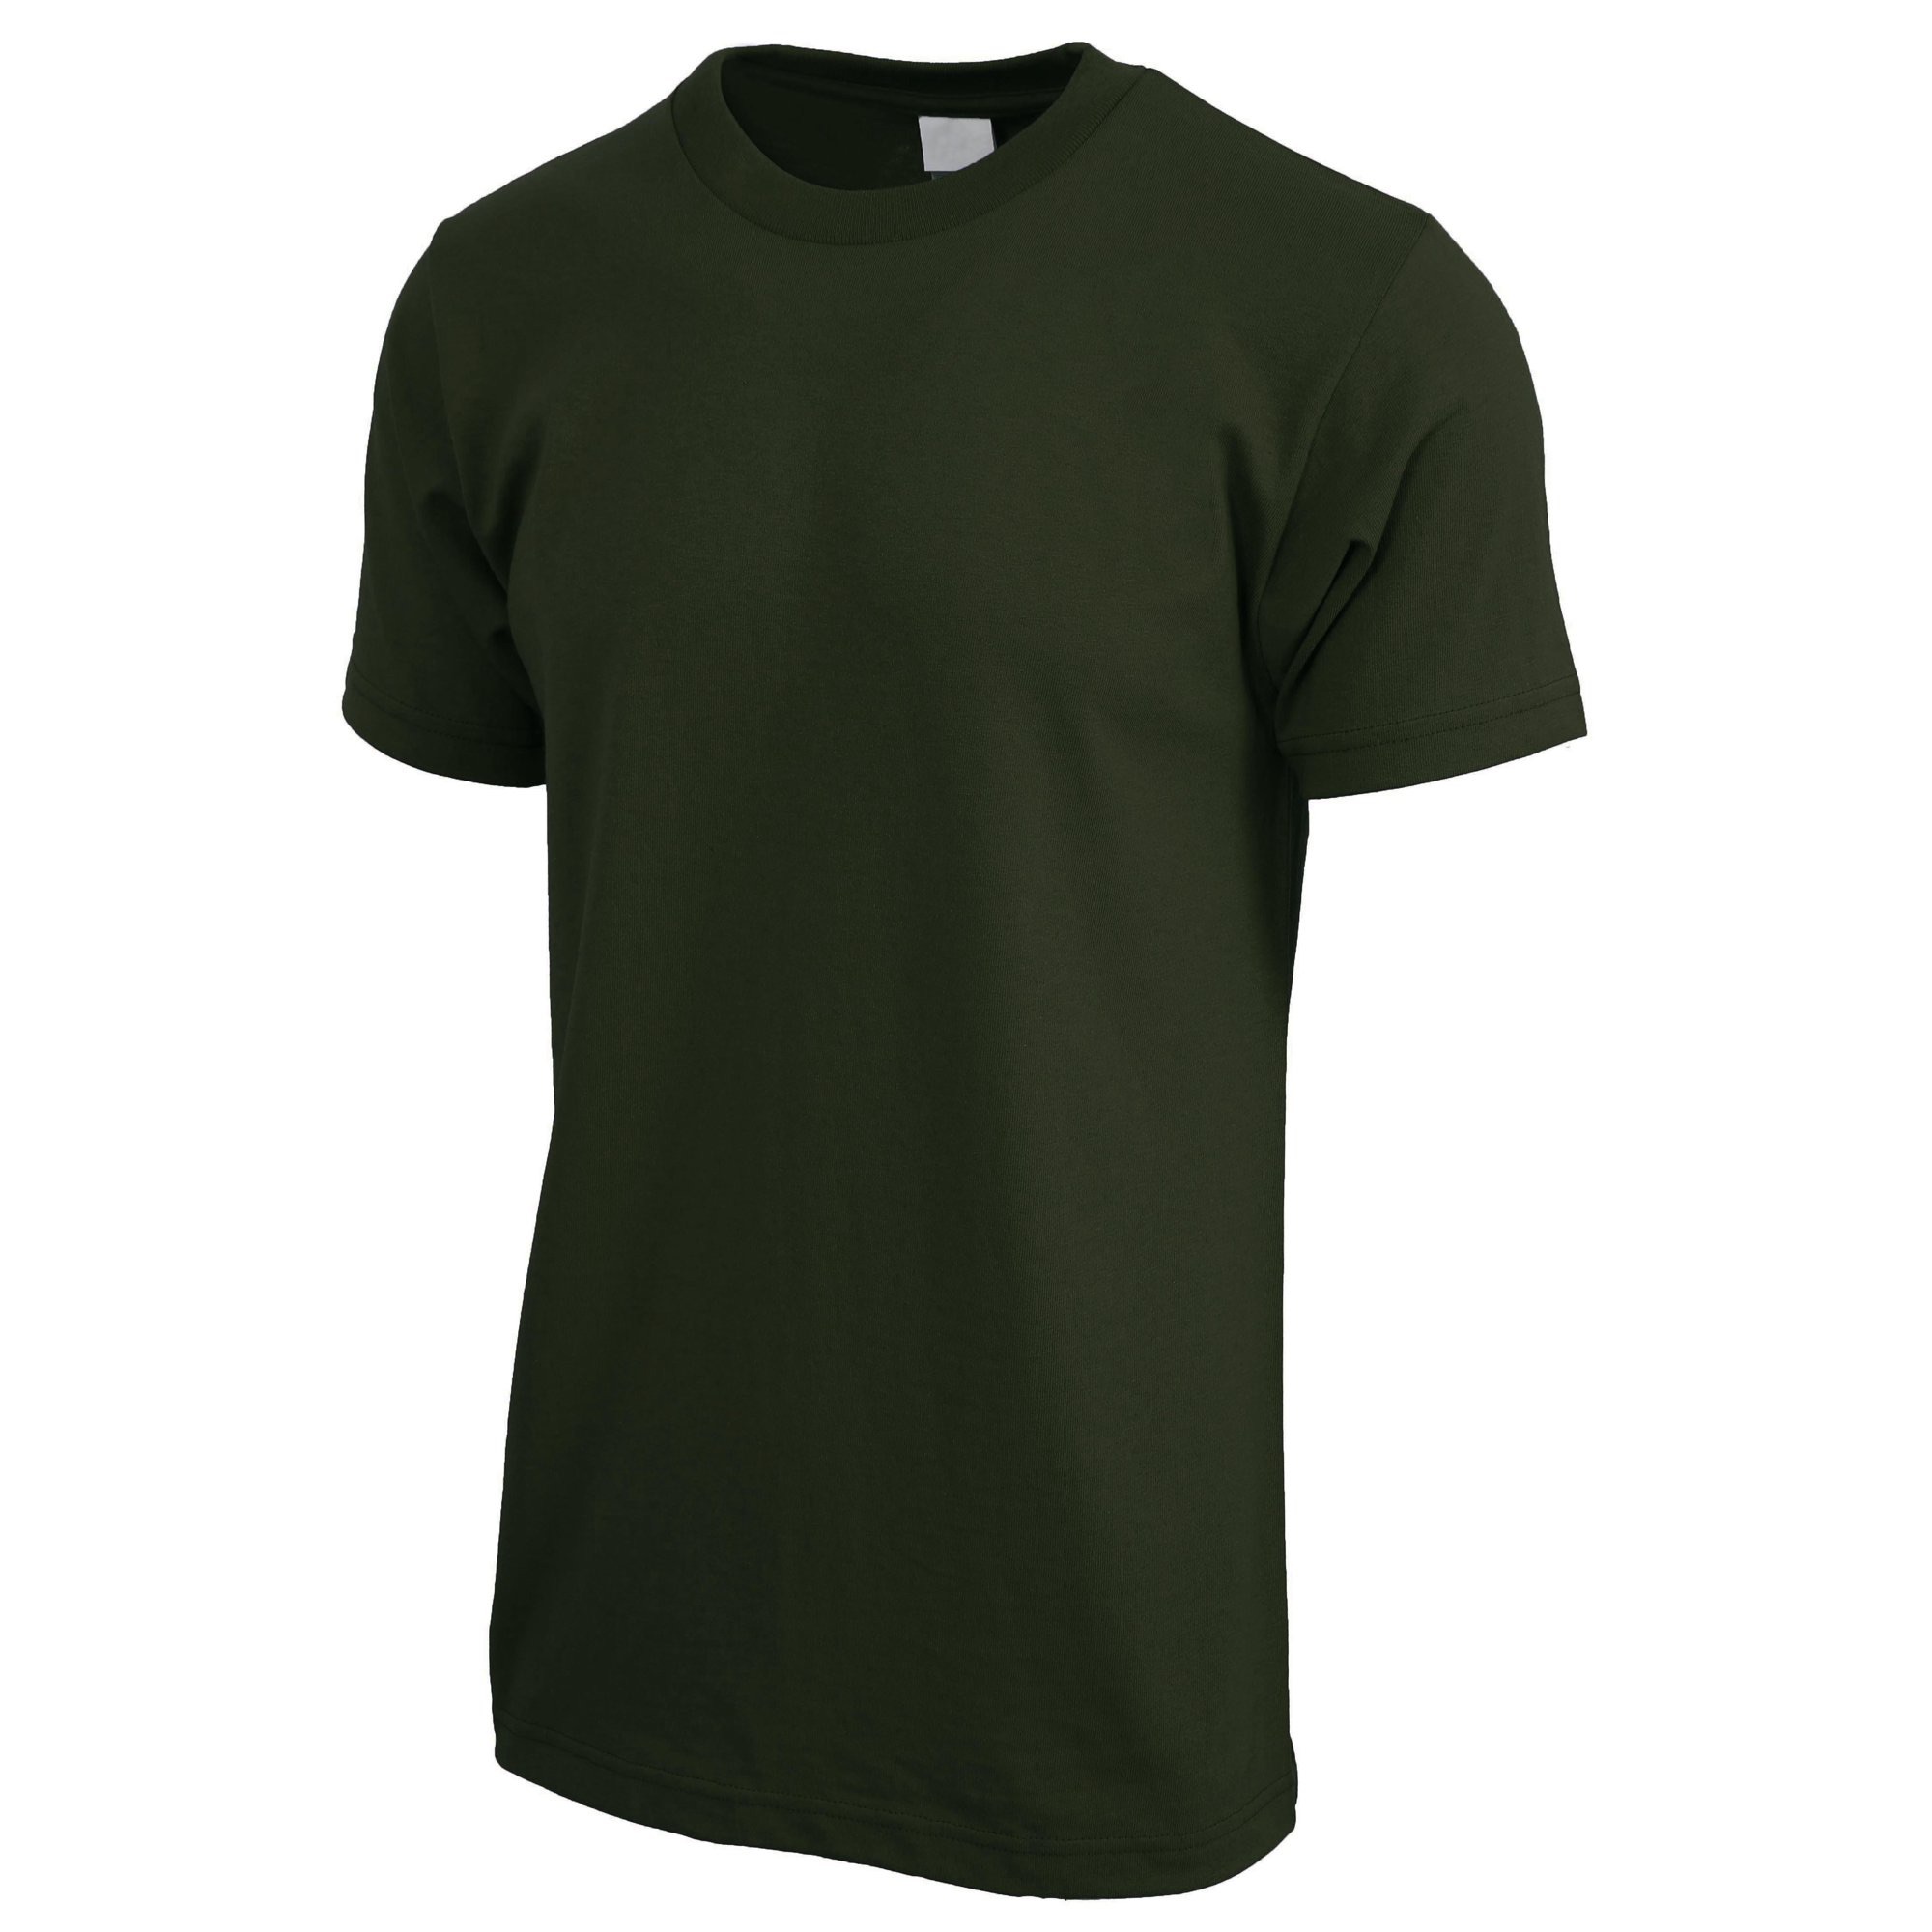 Ma Croix 男士短袖圆领T恤
Ma Croix Mens Crew Neck T Shirt Solid Short Sleeve Tee S-5XL Big and Tall - Walmart.com - Walmart.com